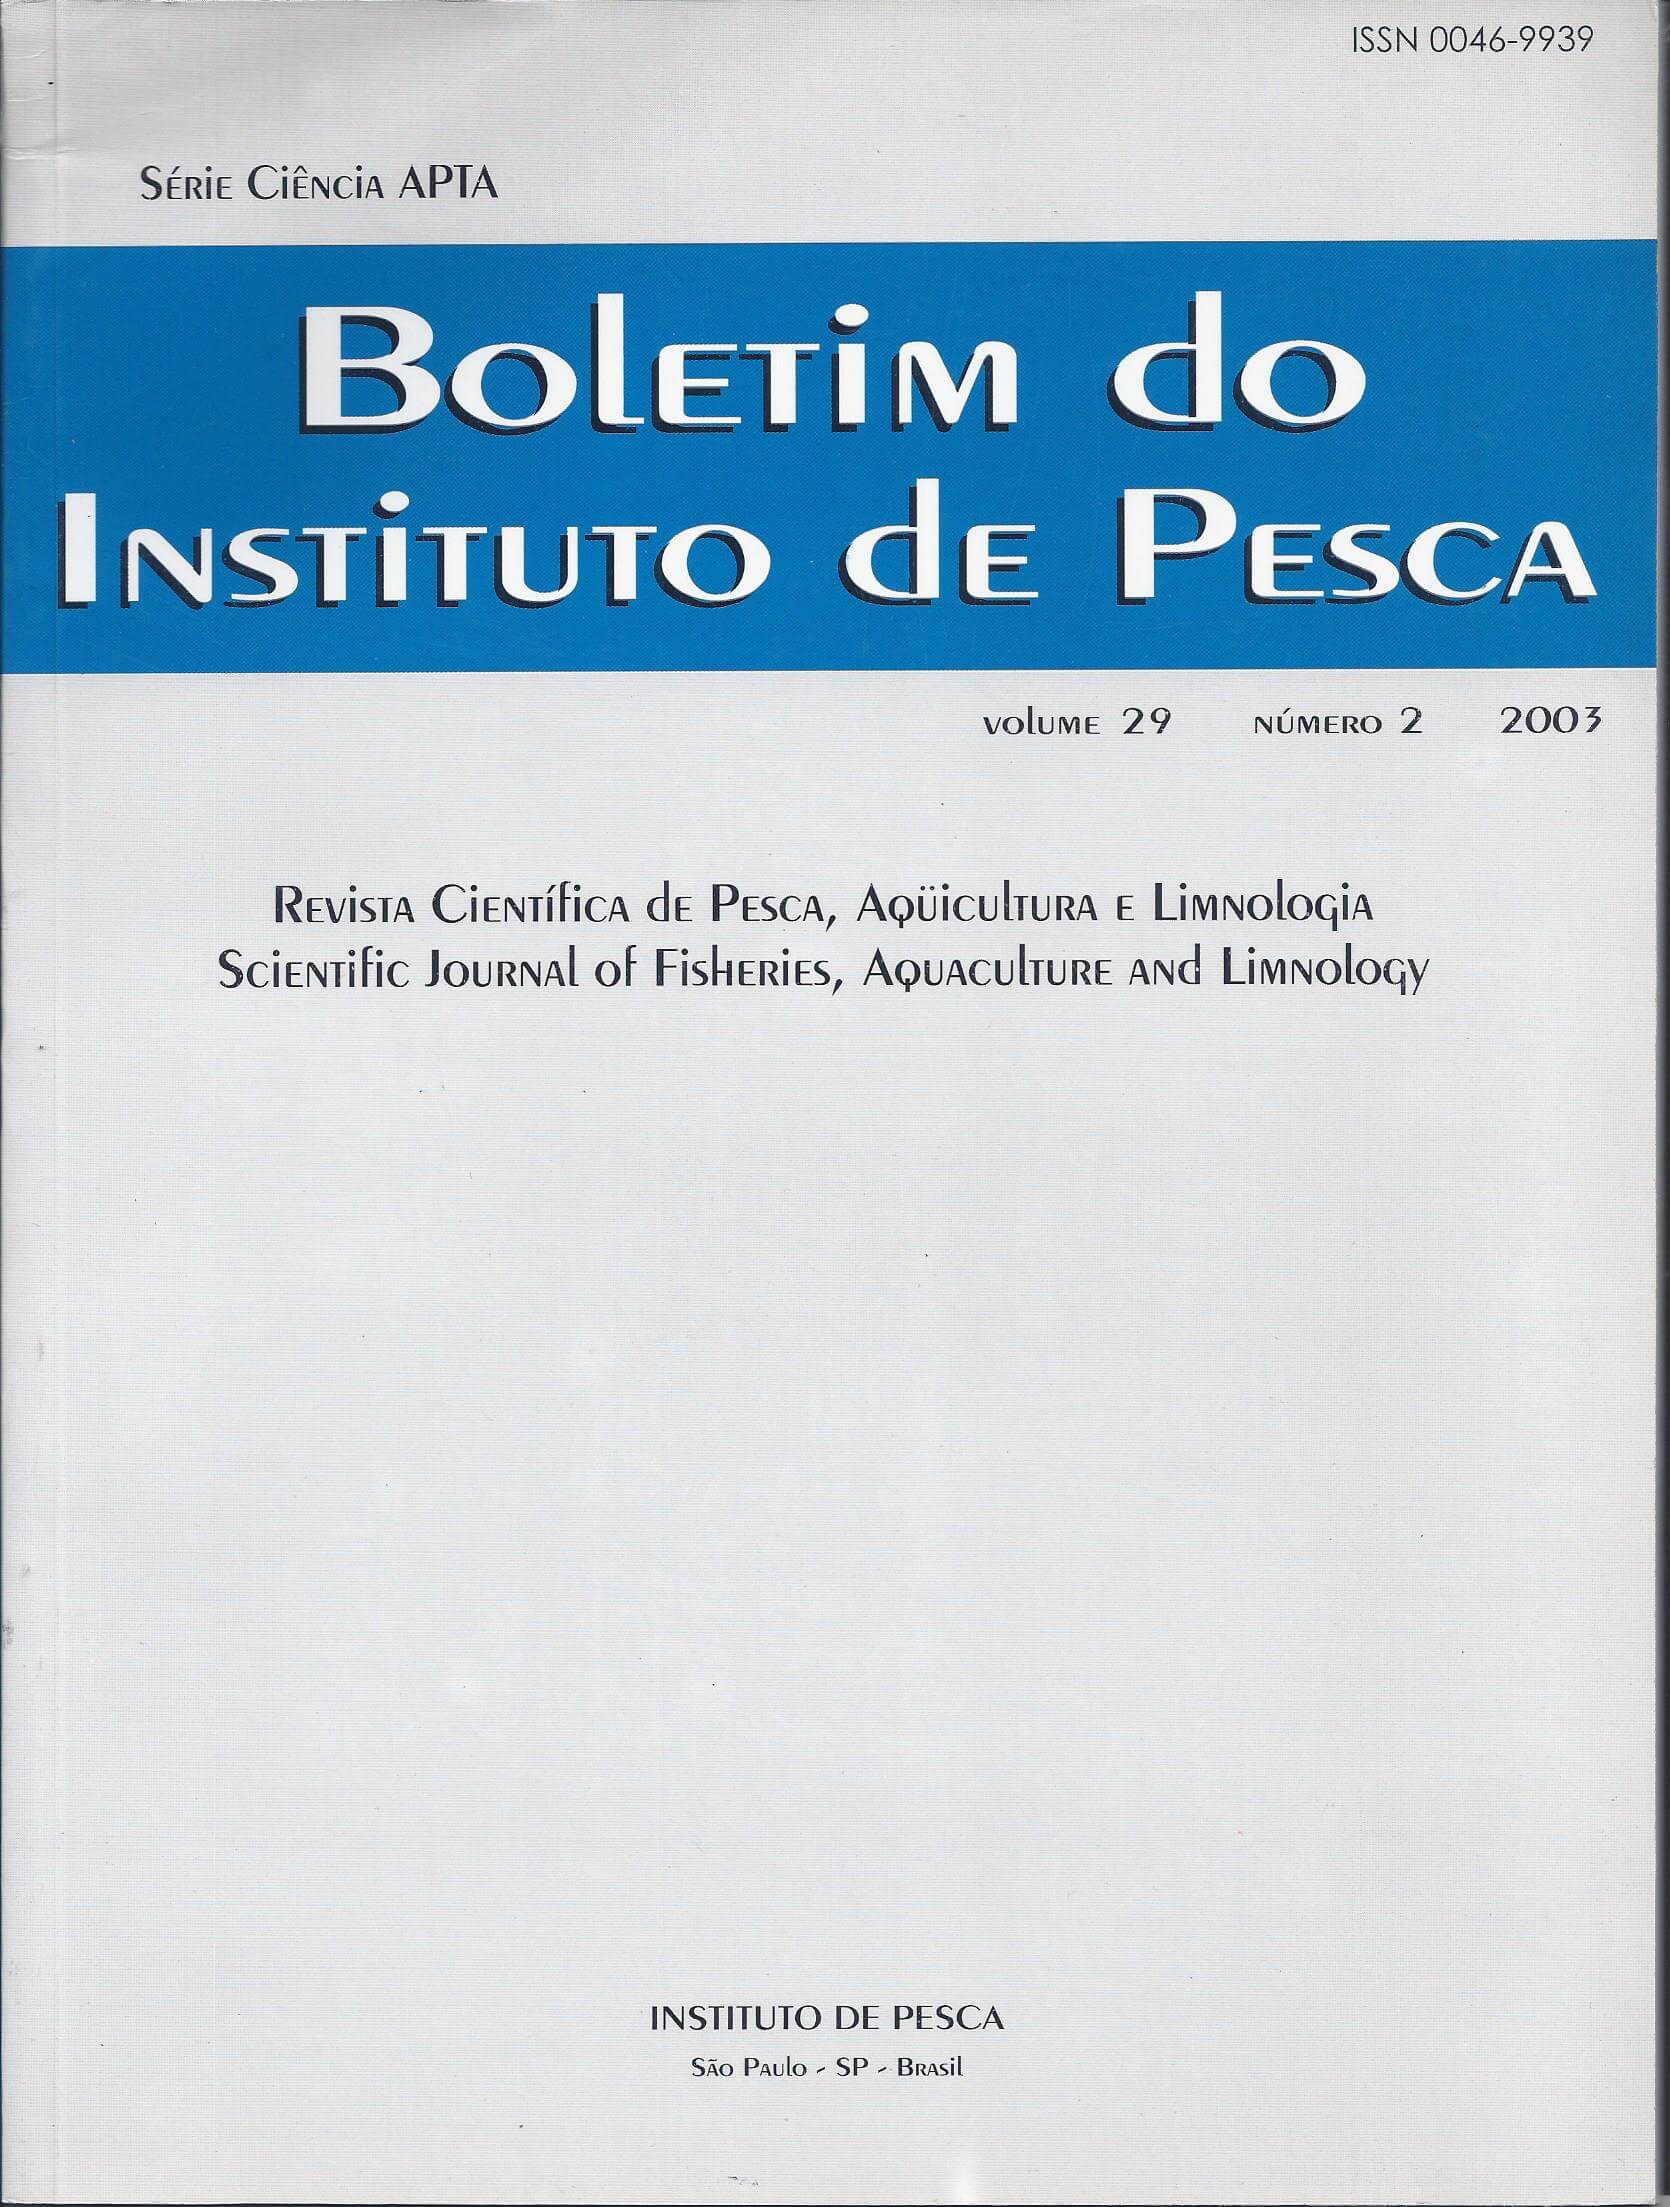 					Visualizar v. 29 n. 2 (2003): BOLETIM DO INSTITUTO DE PESCA
				